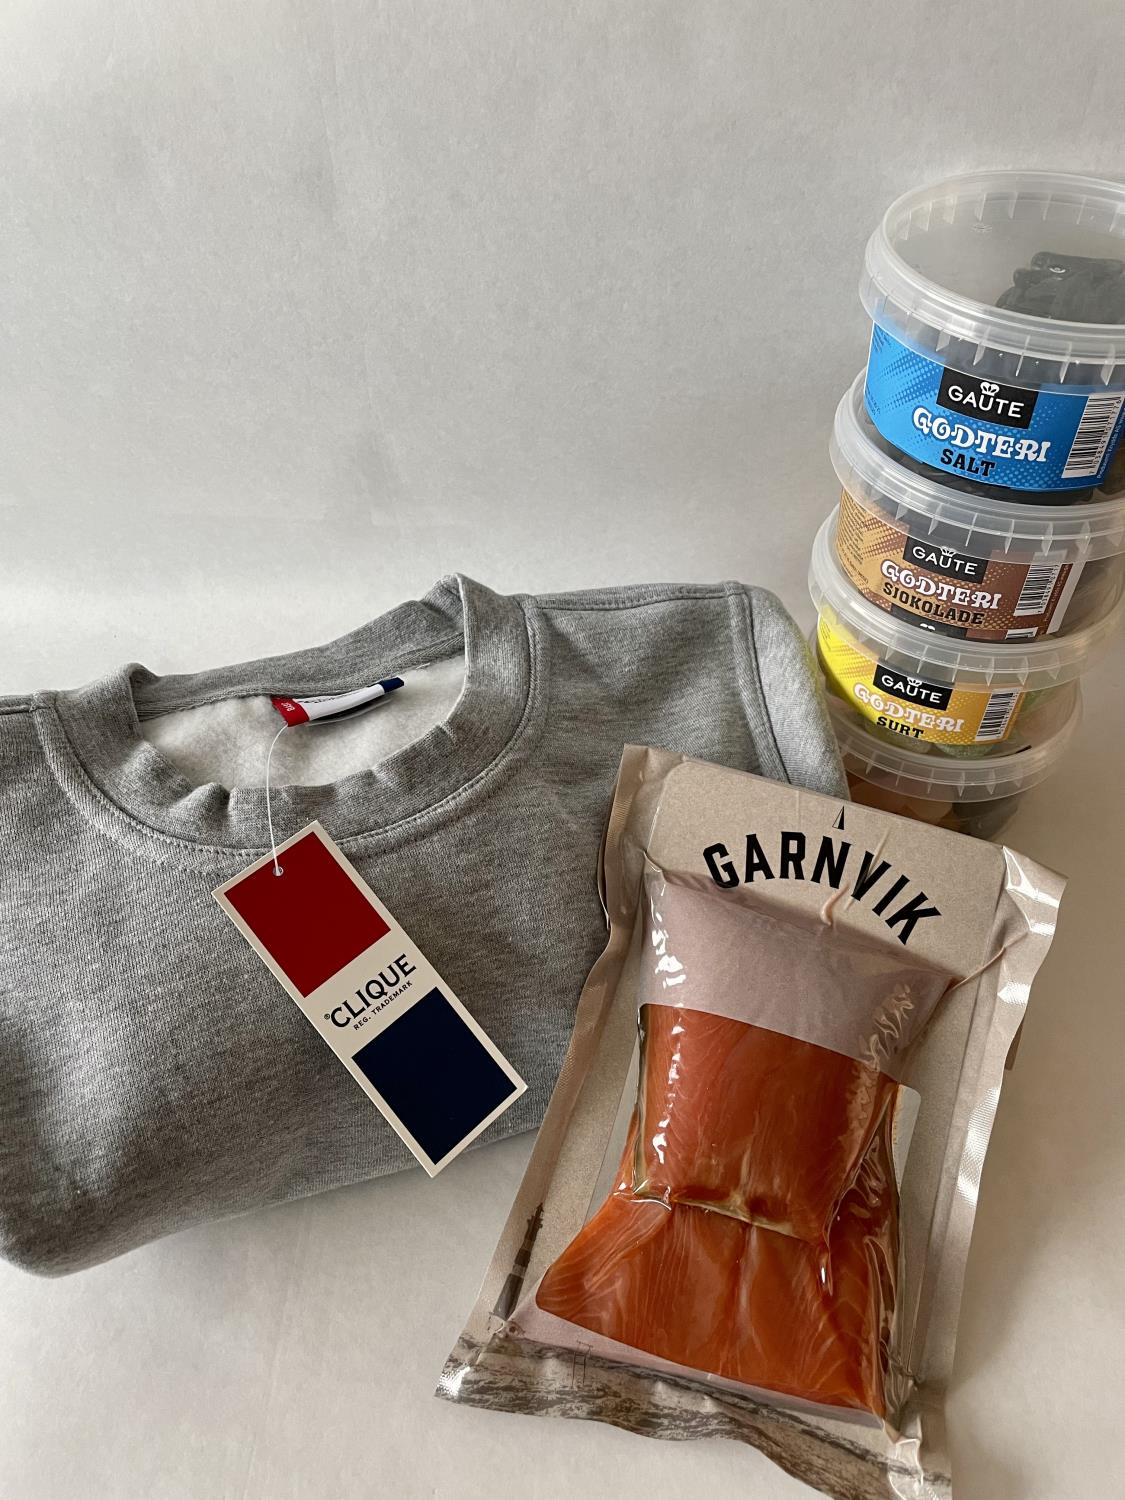 Produktpakke med grå collegegenser, 4 godteribokser og røkt bit fra Garnvik